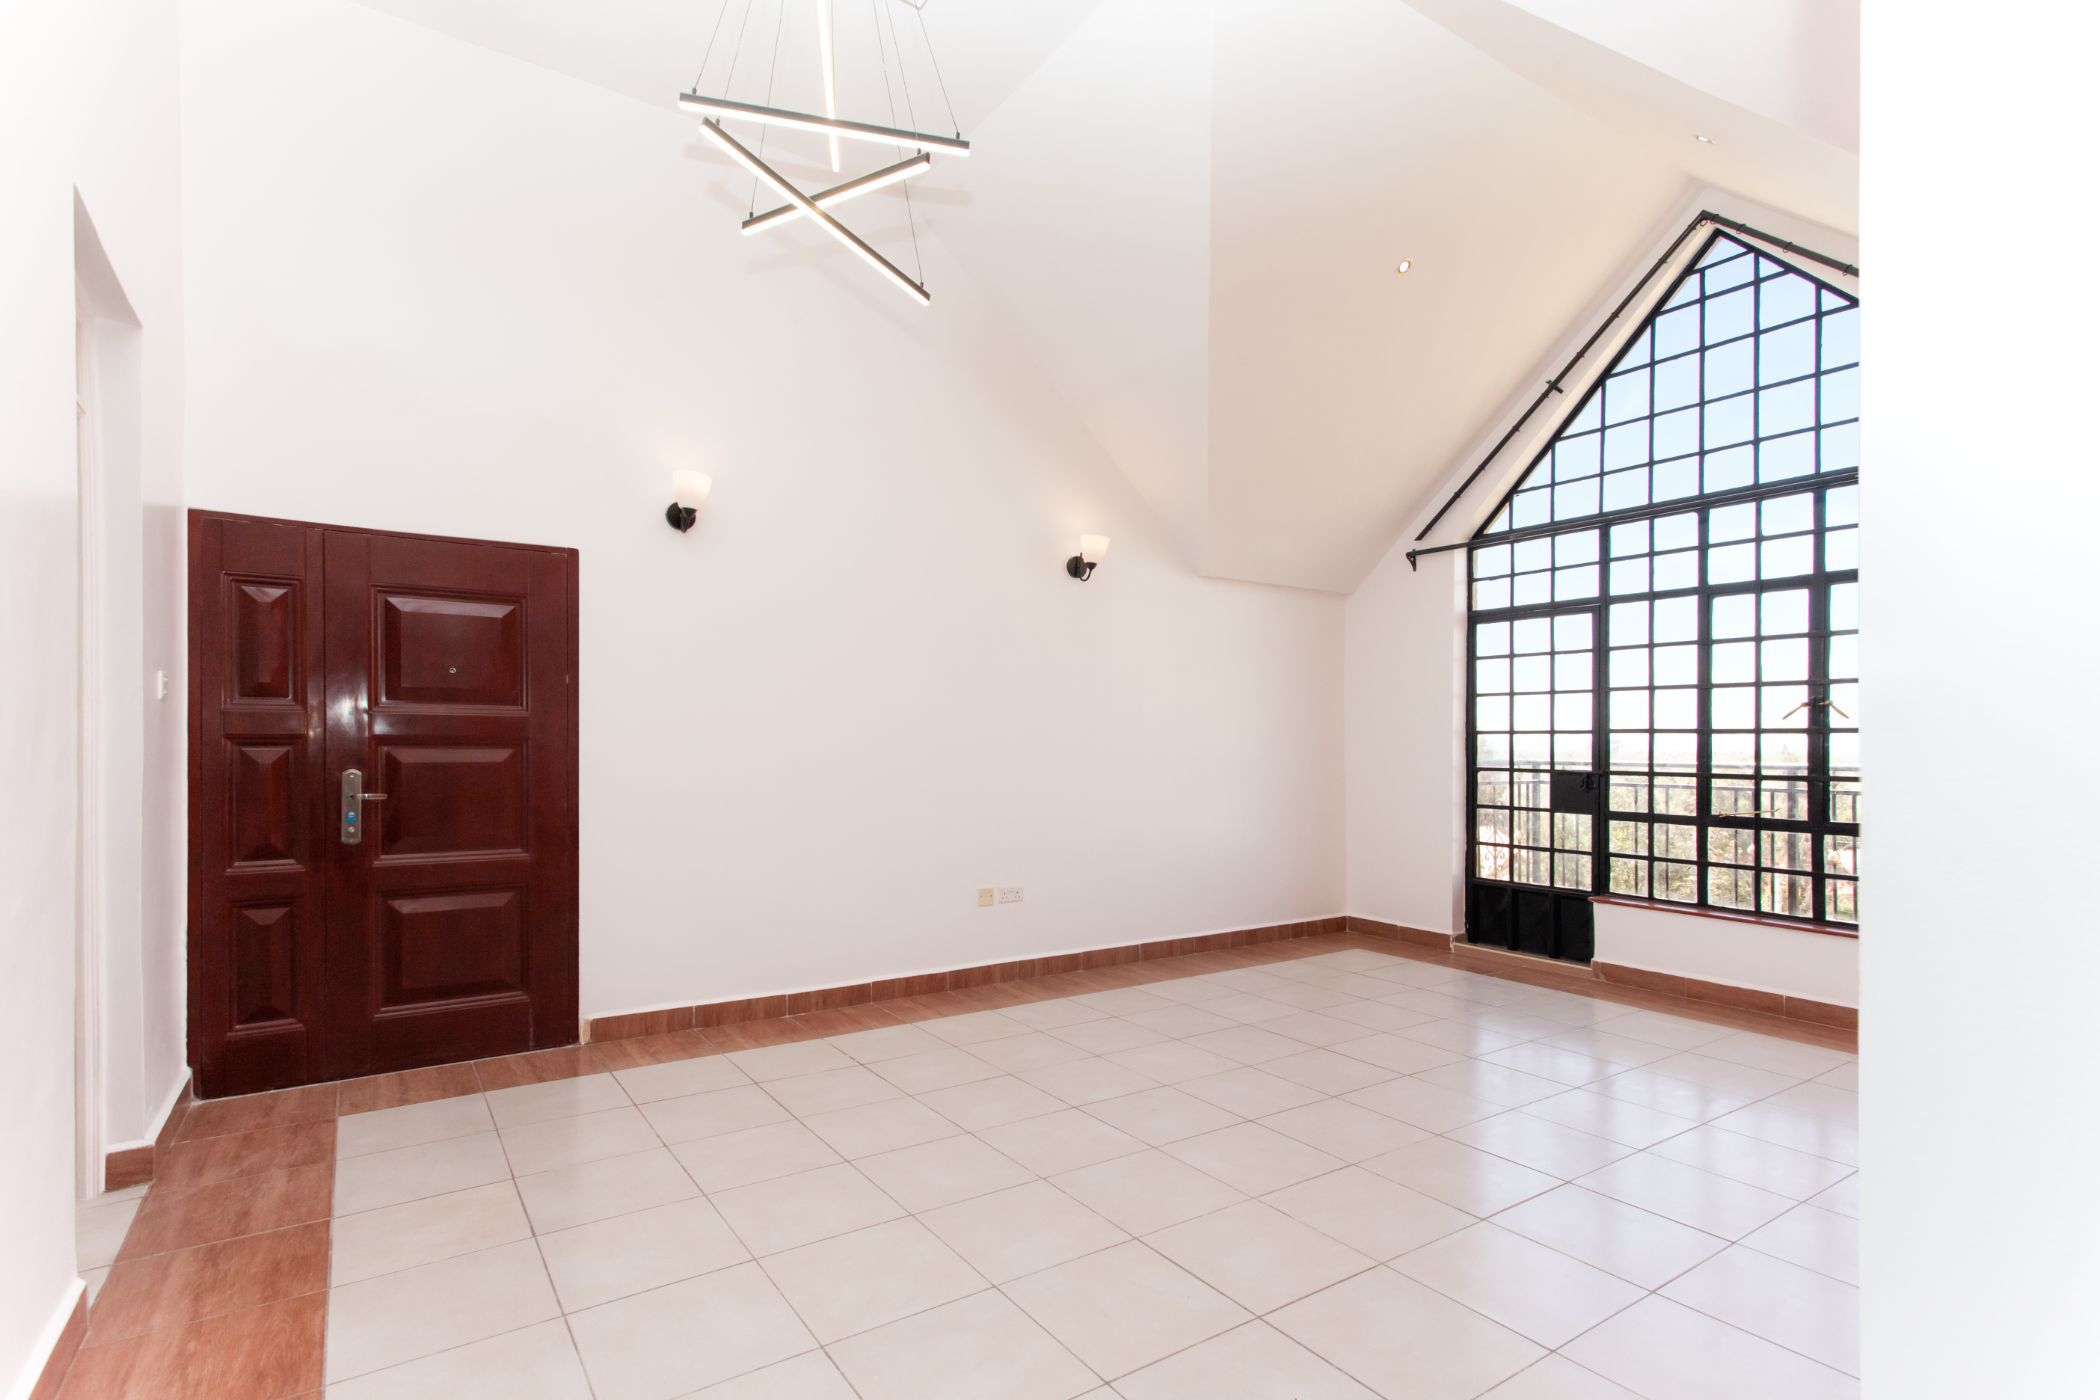 3 bedroom apartment for sale in Syokimau (Kenya)